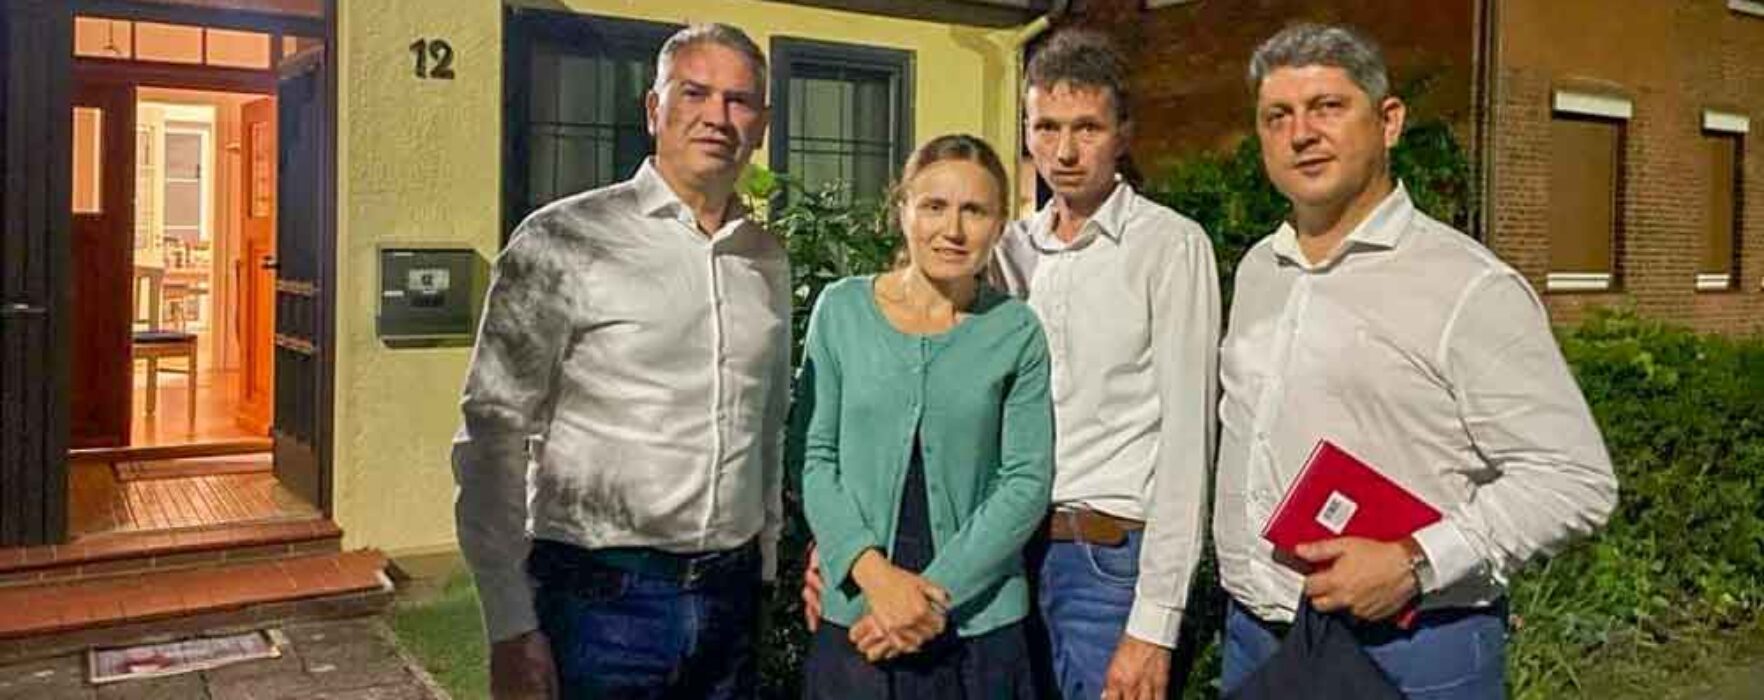 Misiune oficială în Germania în sprijinul familiei Furdui, despărţită de luni de zile de copii